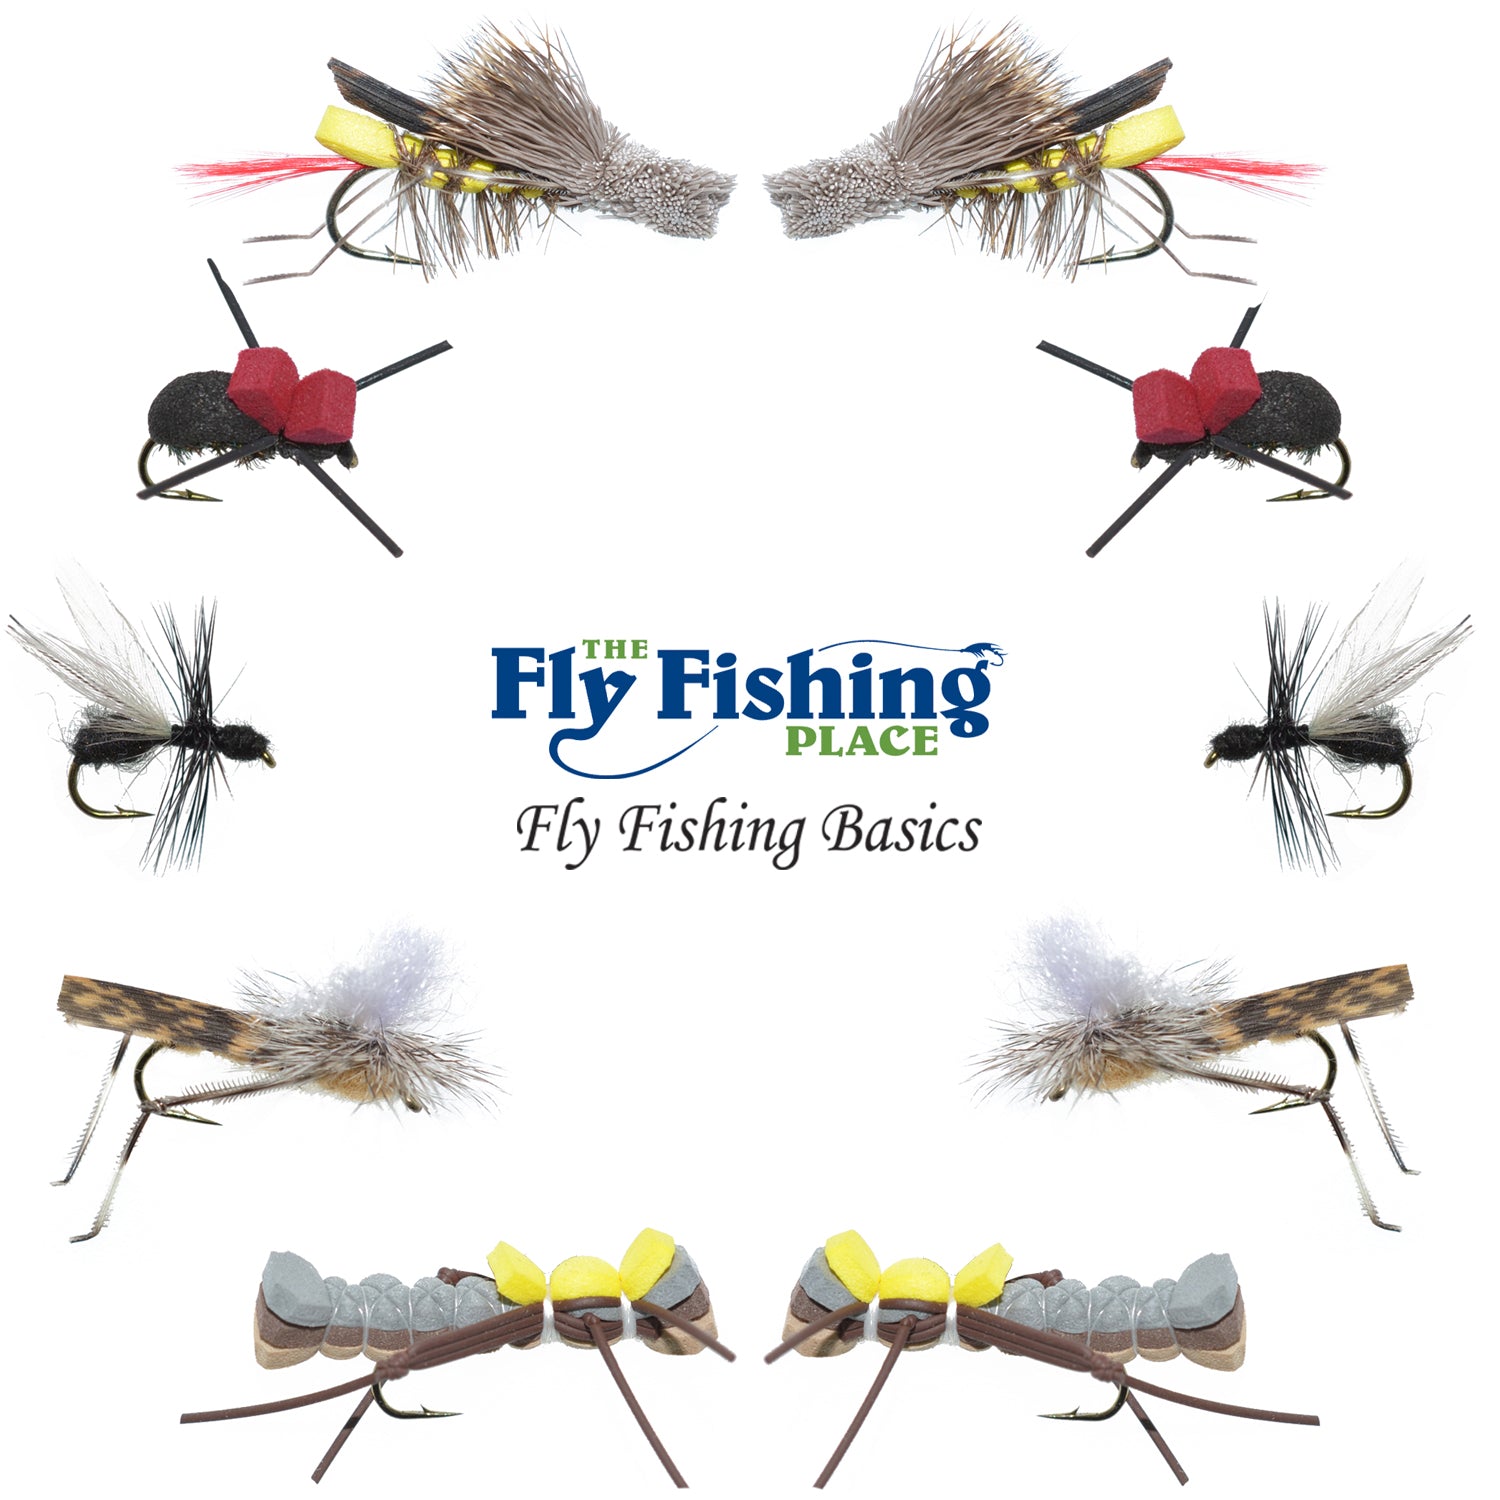 The Fly Fishing Place Basics Collection - Surtido de moscas secas terrestres - 10 moscas de pesca secas - Patrones de moscas para pesca de tolva, hormigas y escarabajos - Tamaños de anzuelo 10, 12 y 14 